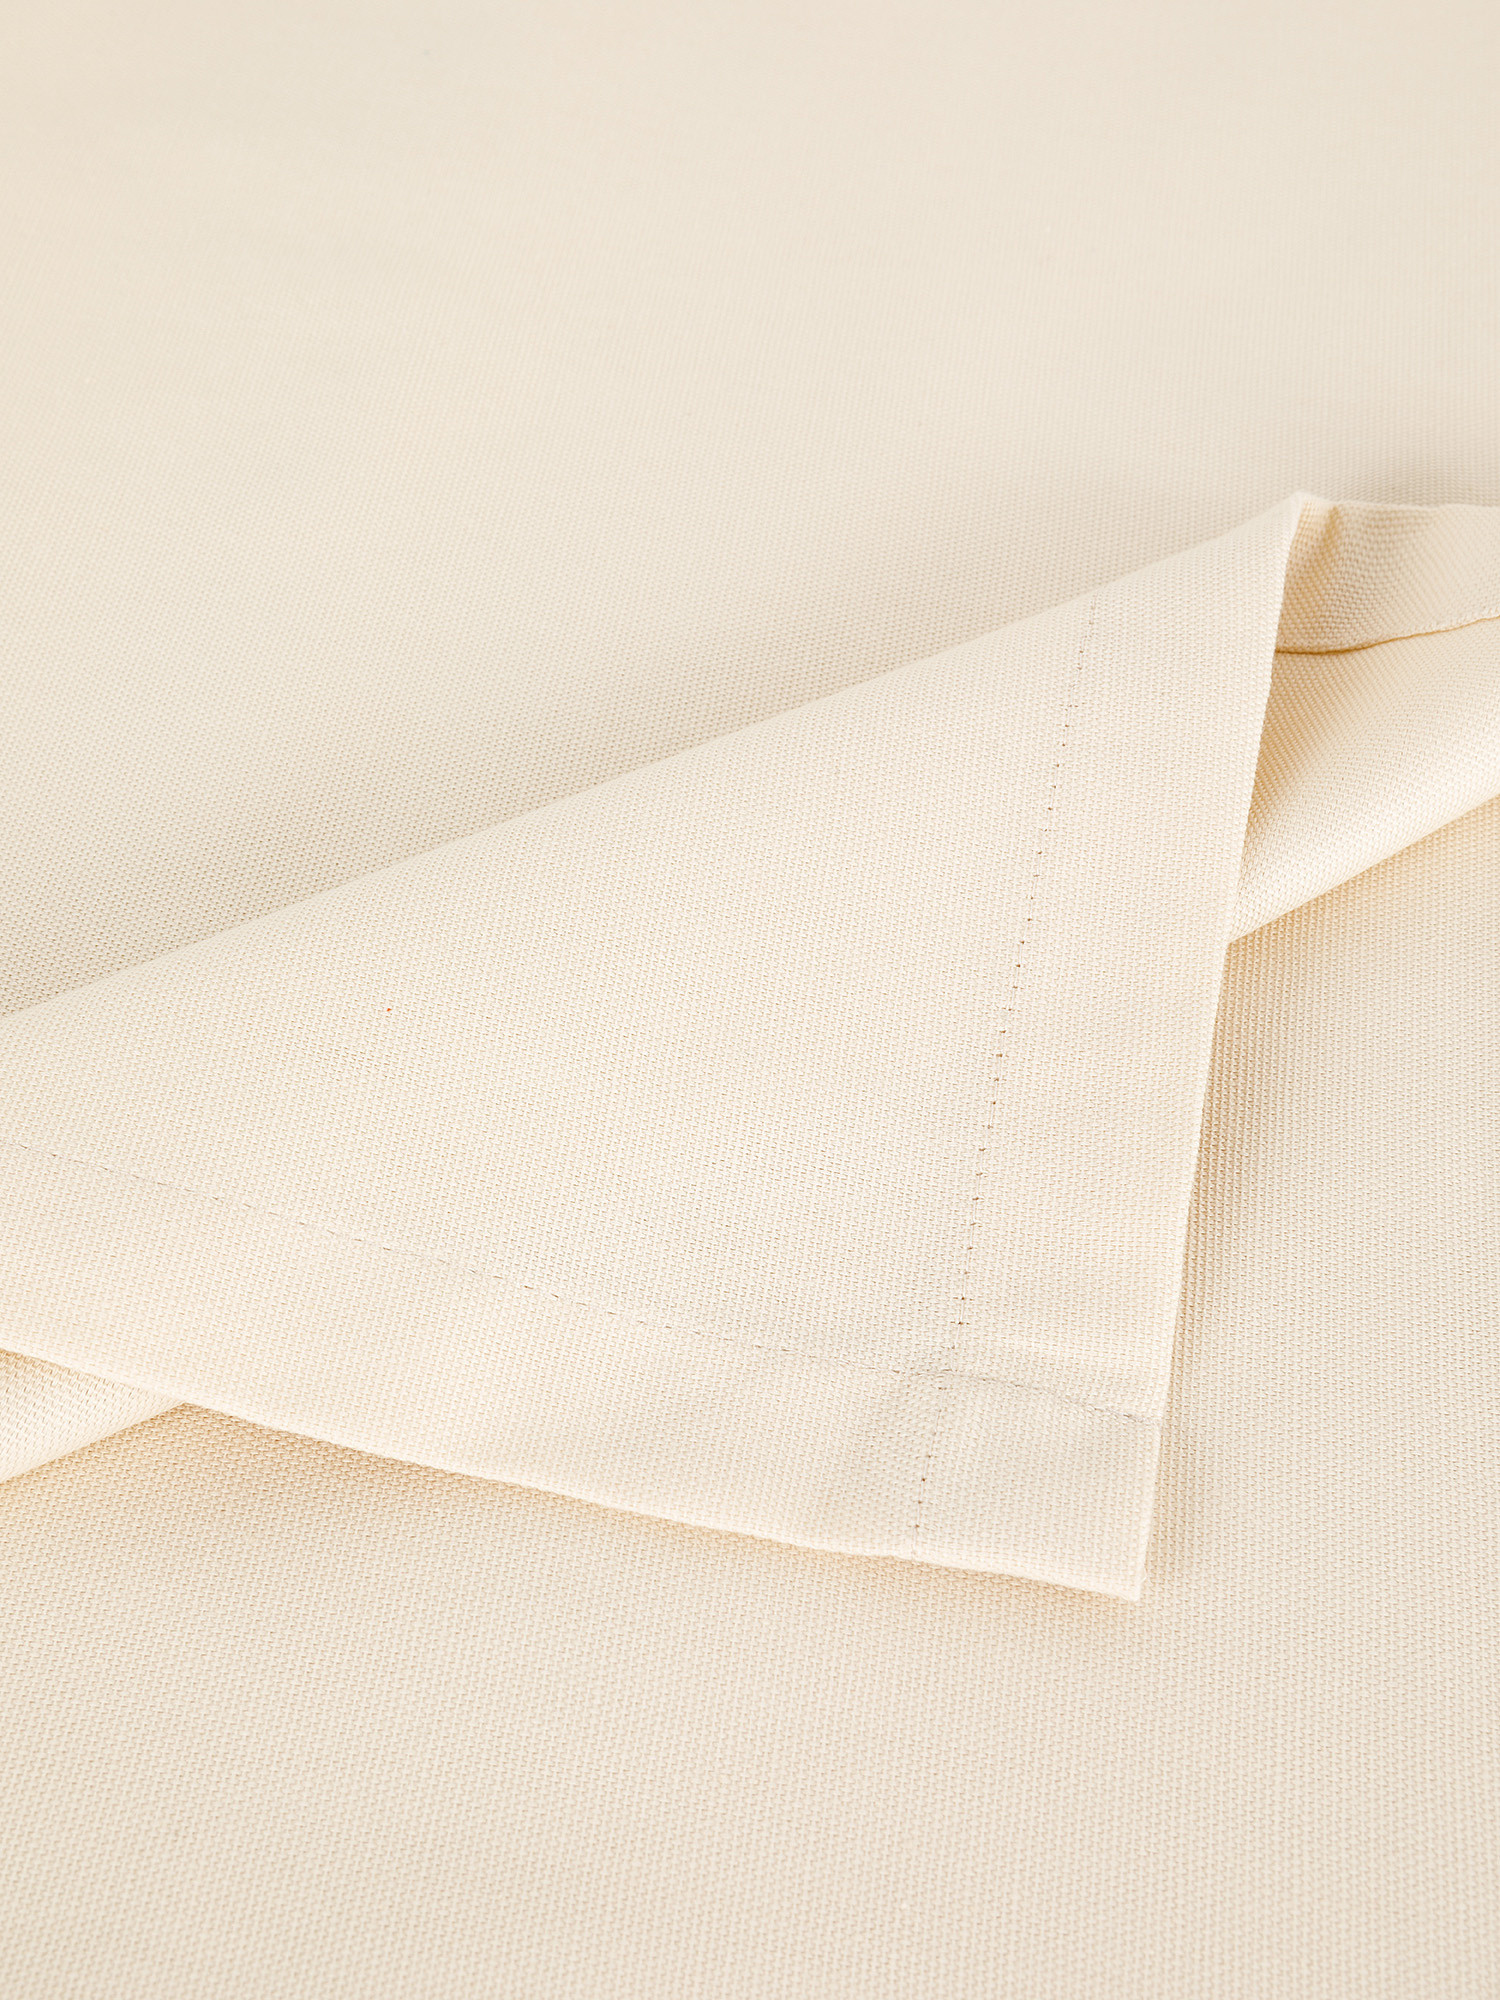 Solid color 100% cotton furnishing towel, Beige, large image number 1